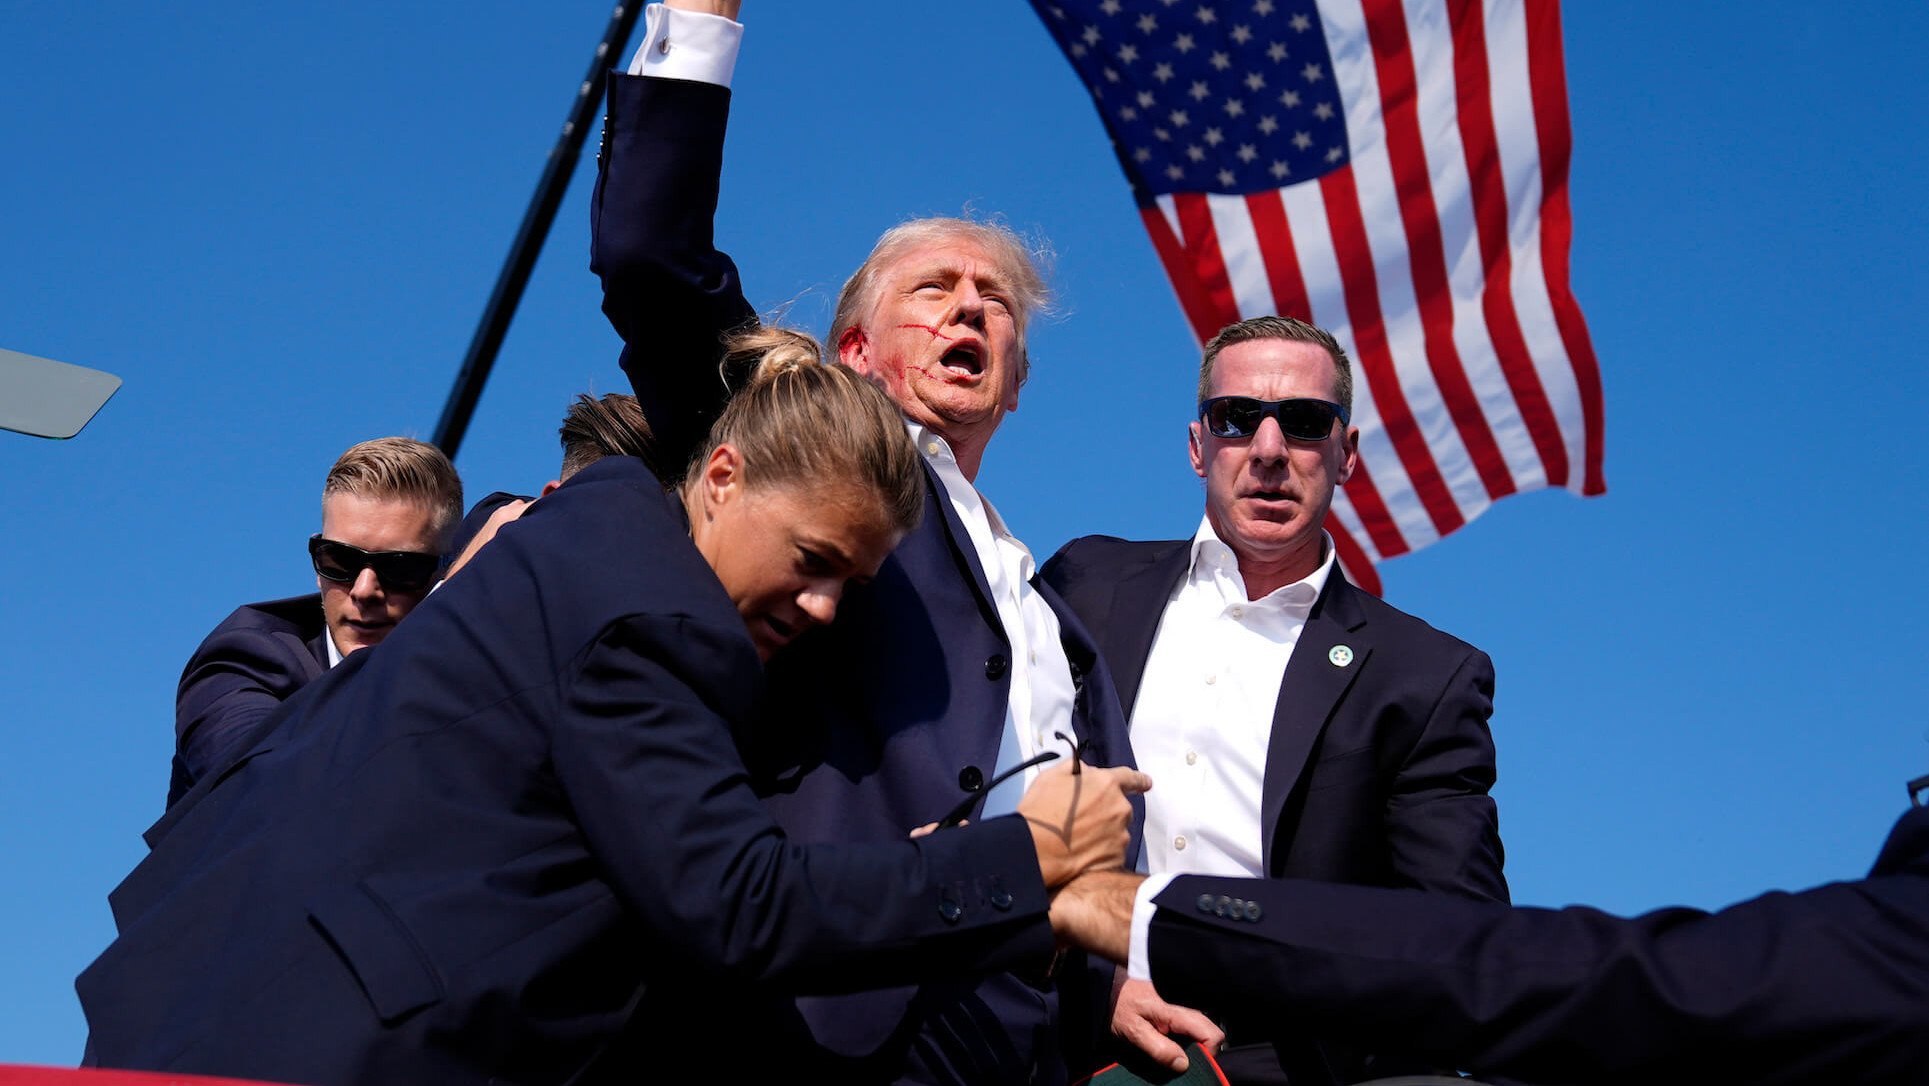 Originalfoto der Situation als Trump von der Bühne geführt wird von mehreren Beamten des Secret Service